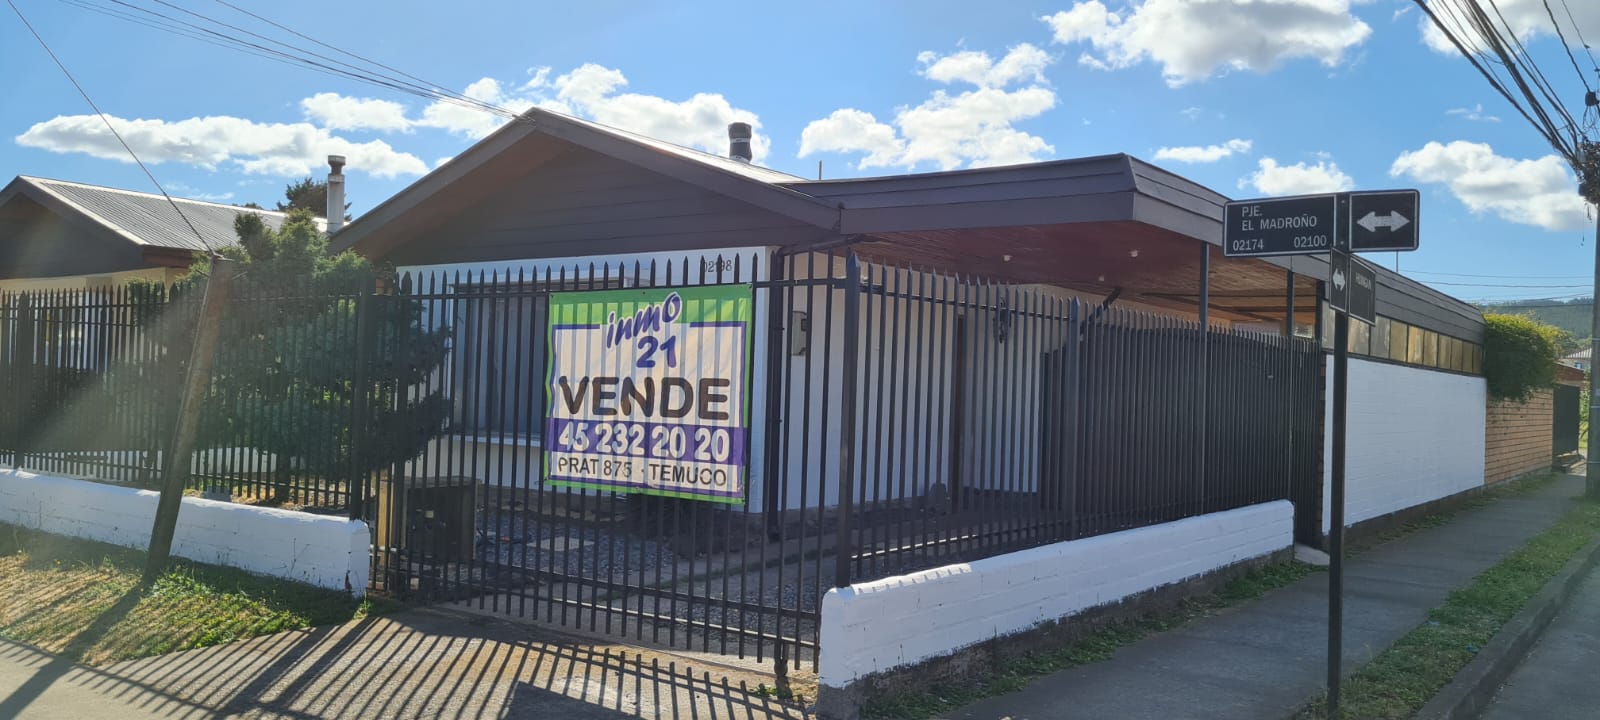 Casa en venta parque don Rosauro-9314 – Temuco